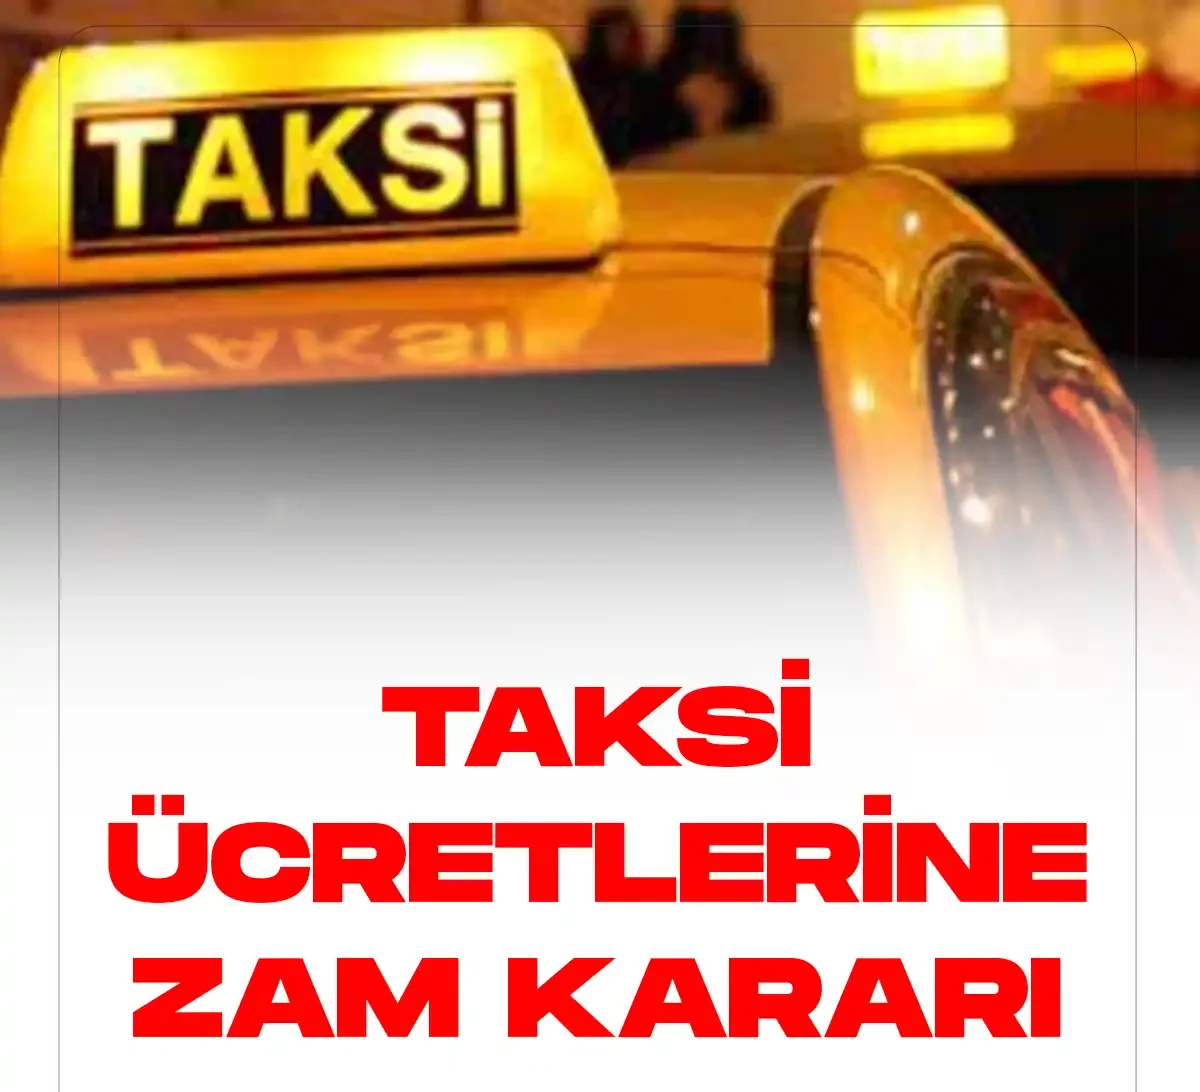 Ankarada taksi ücretlerine zam kararı verildi.